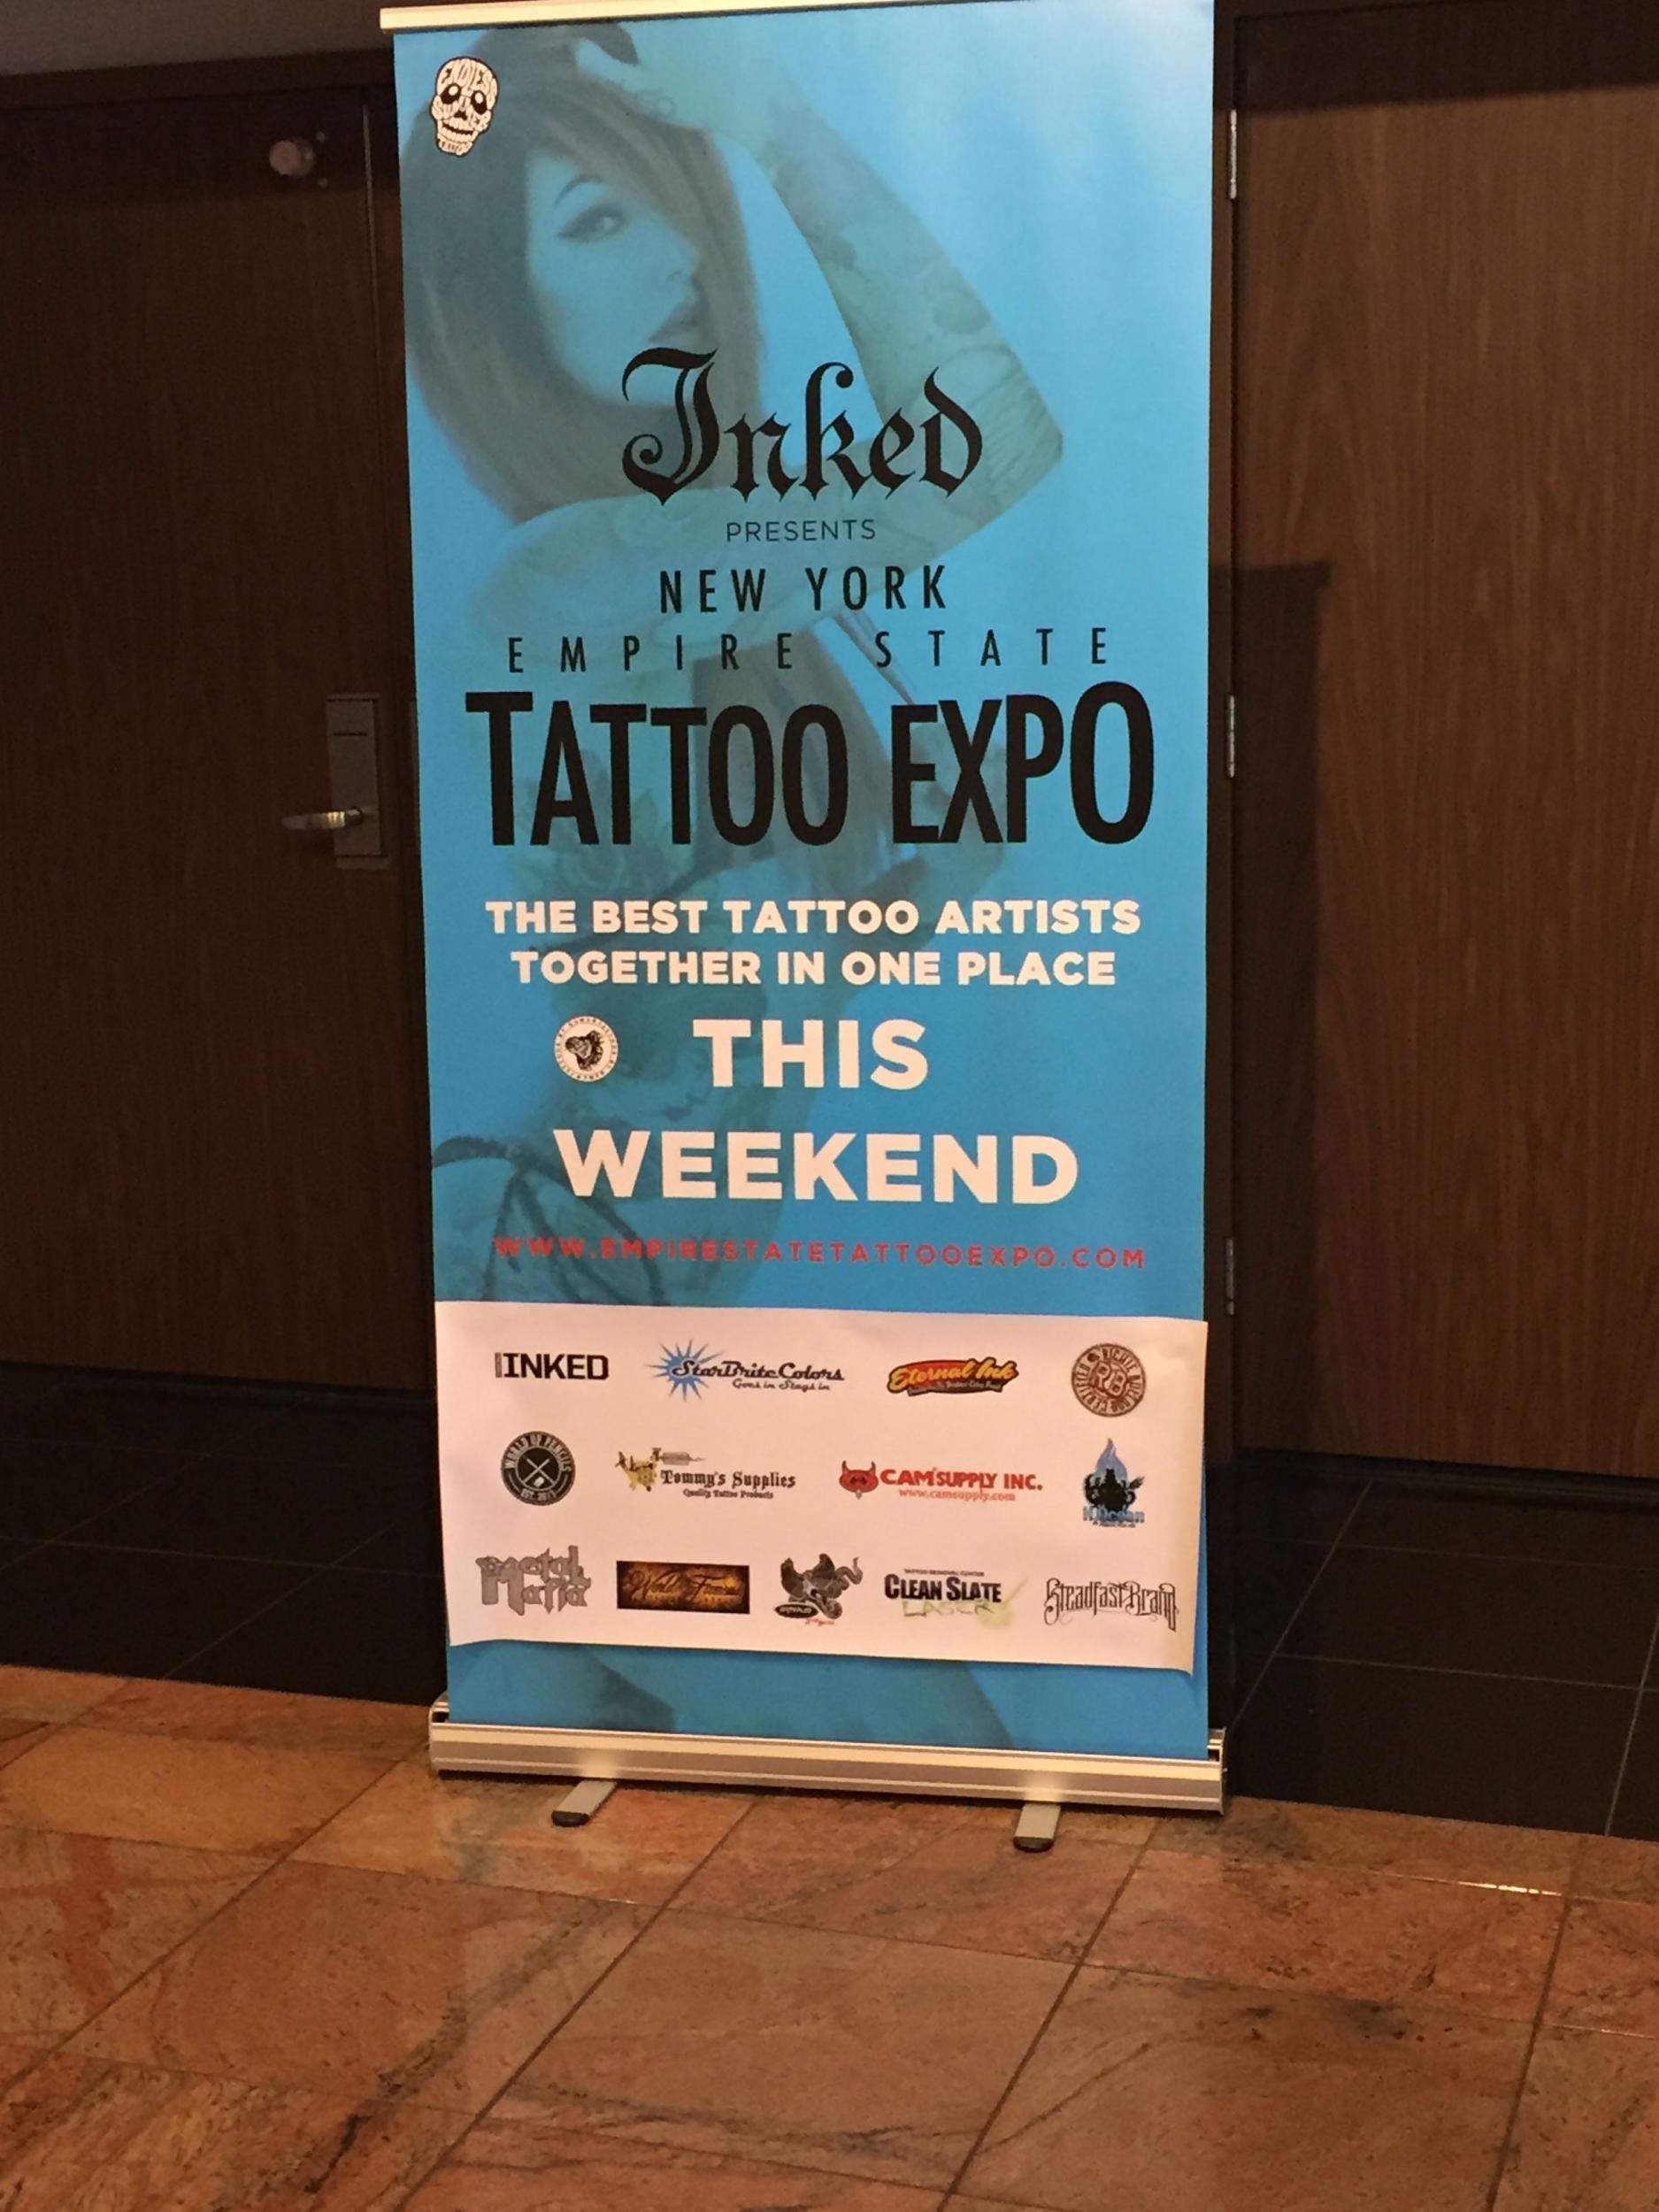 The tattoo expo happening one floor below